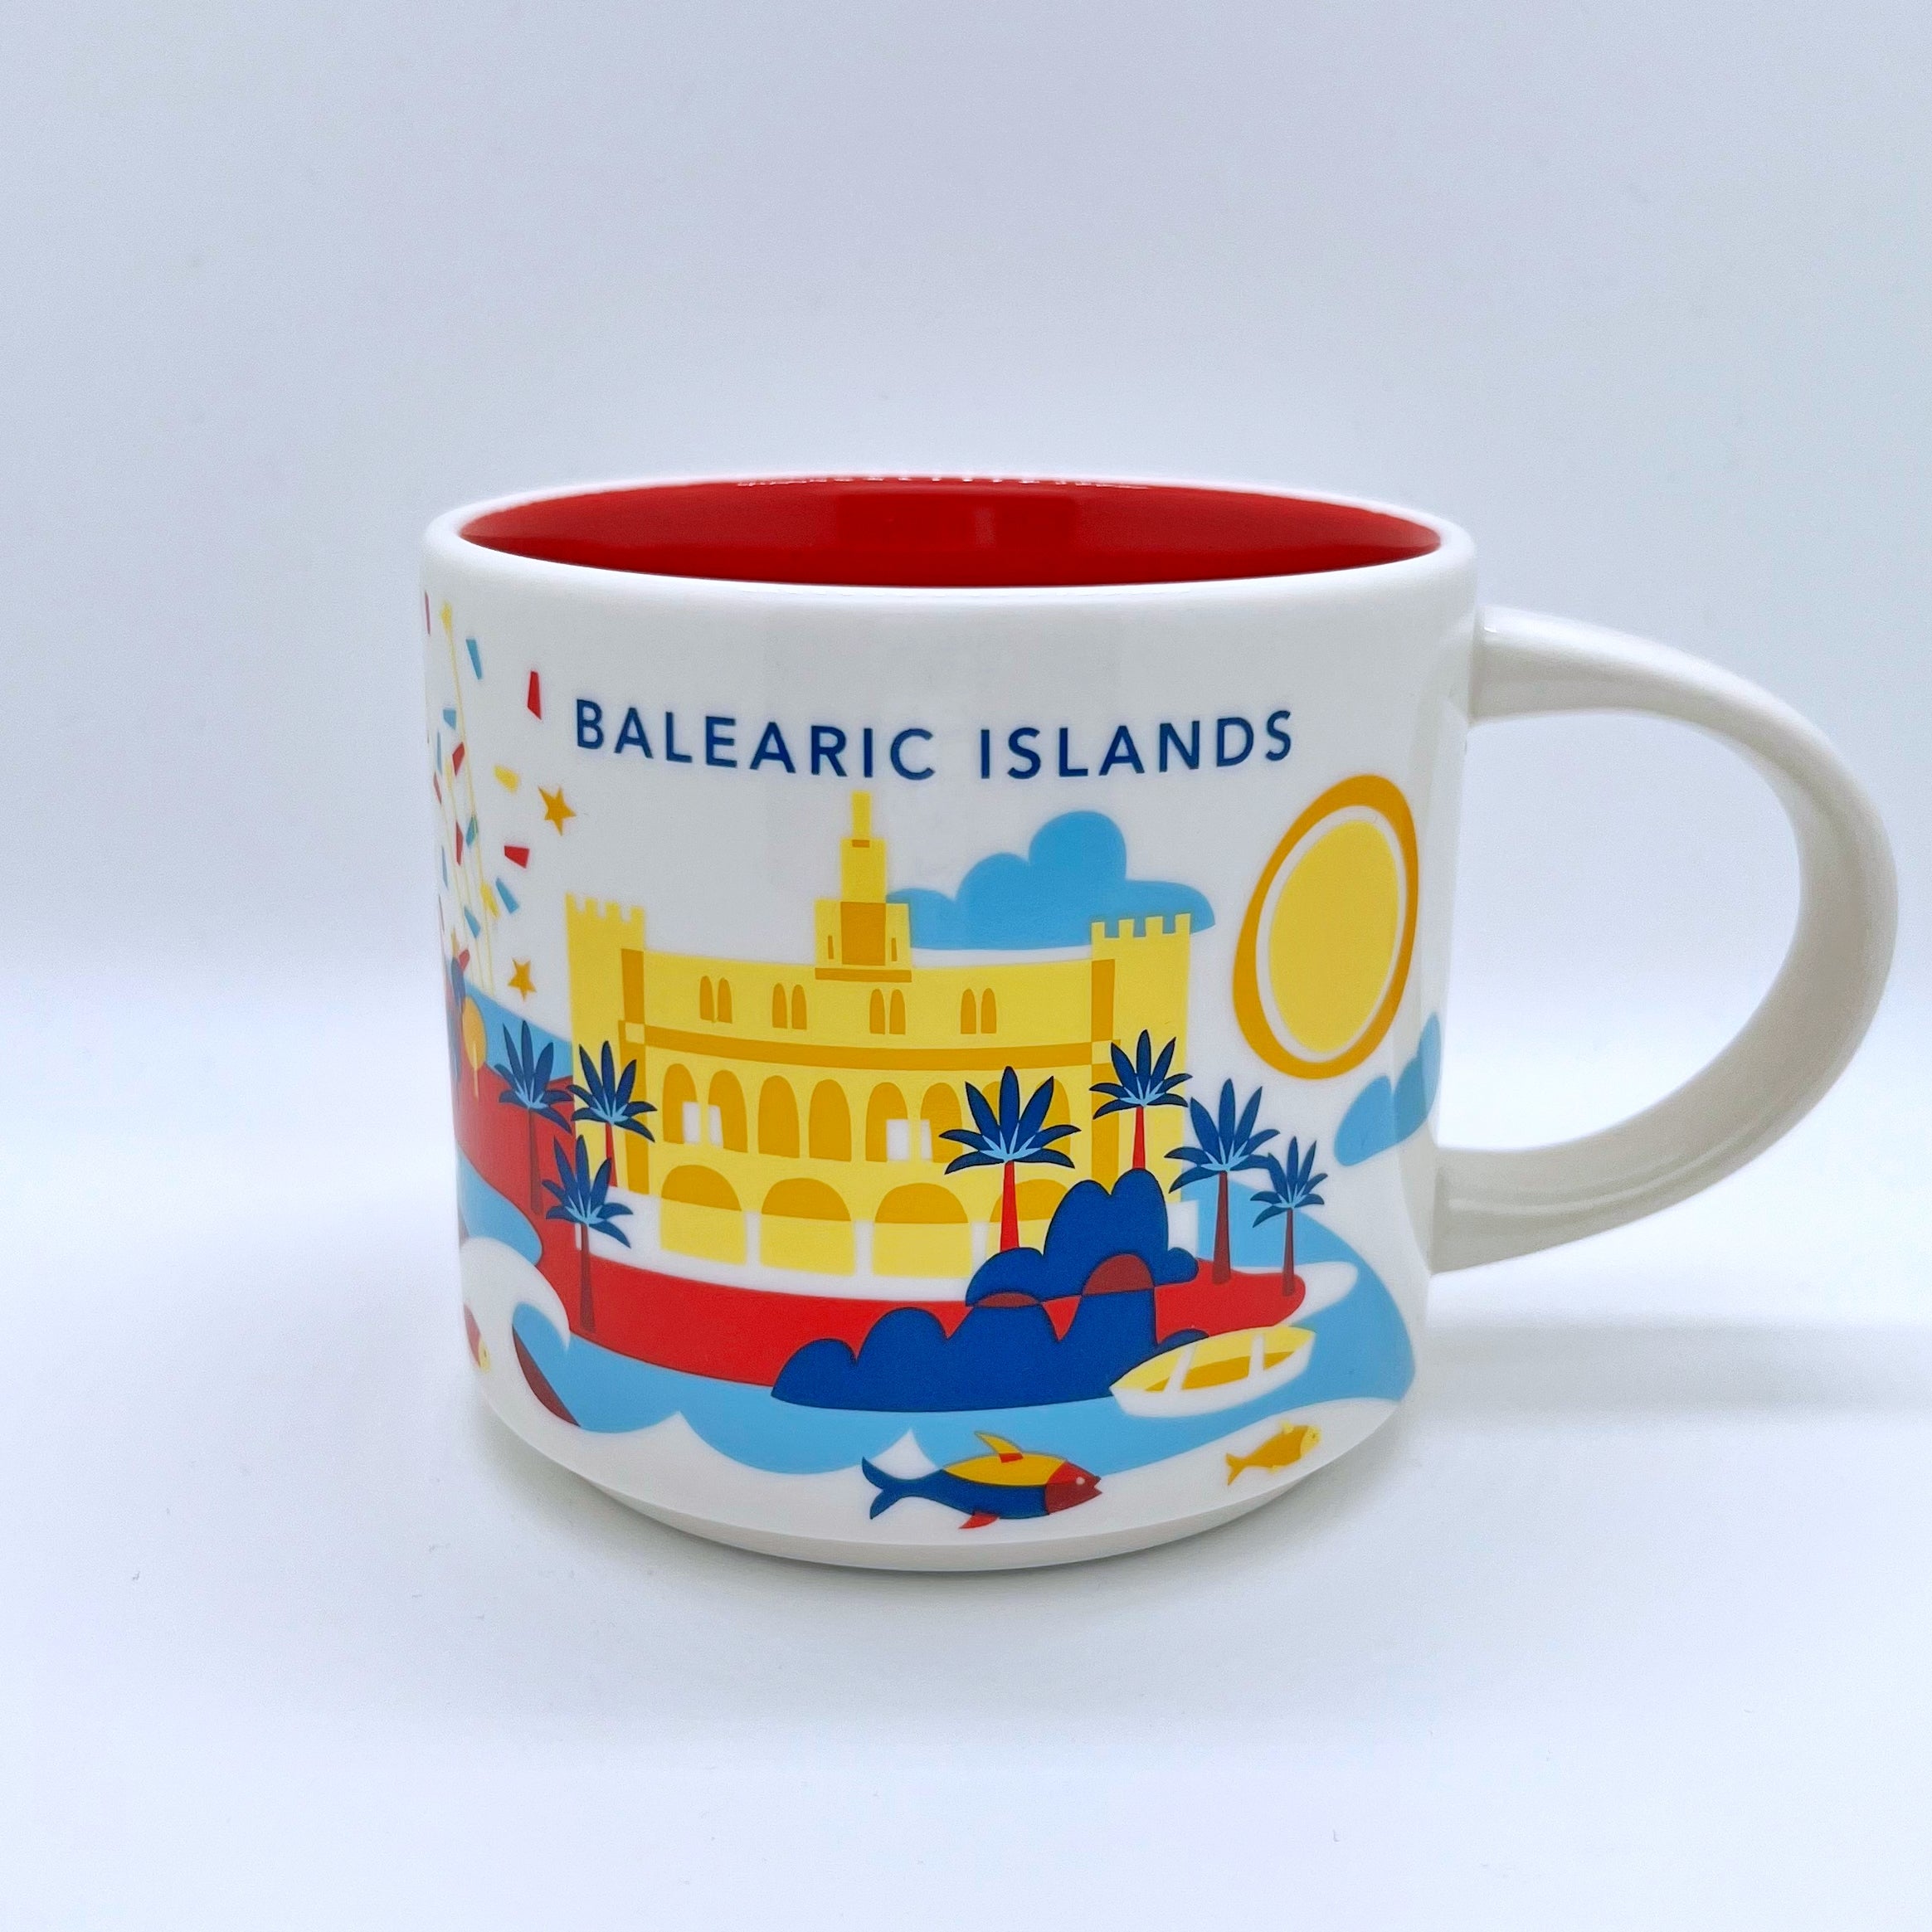 Kaffee Tee und Cappuccino Tasse von Starbucks mit gemalten Bildern aus der Stadt Balearic Islands